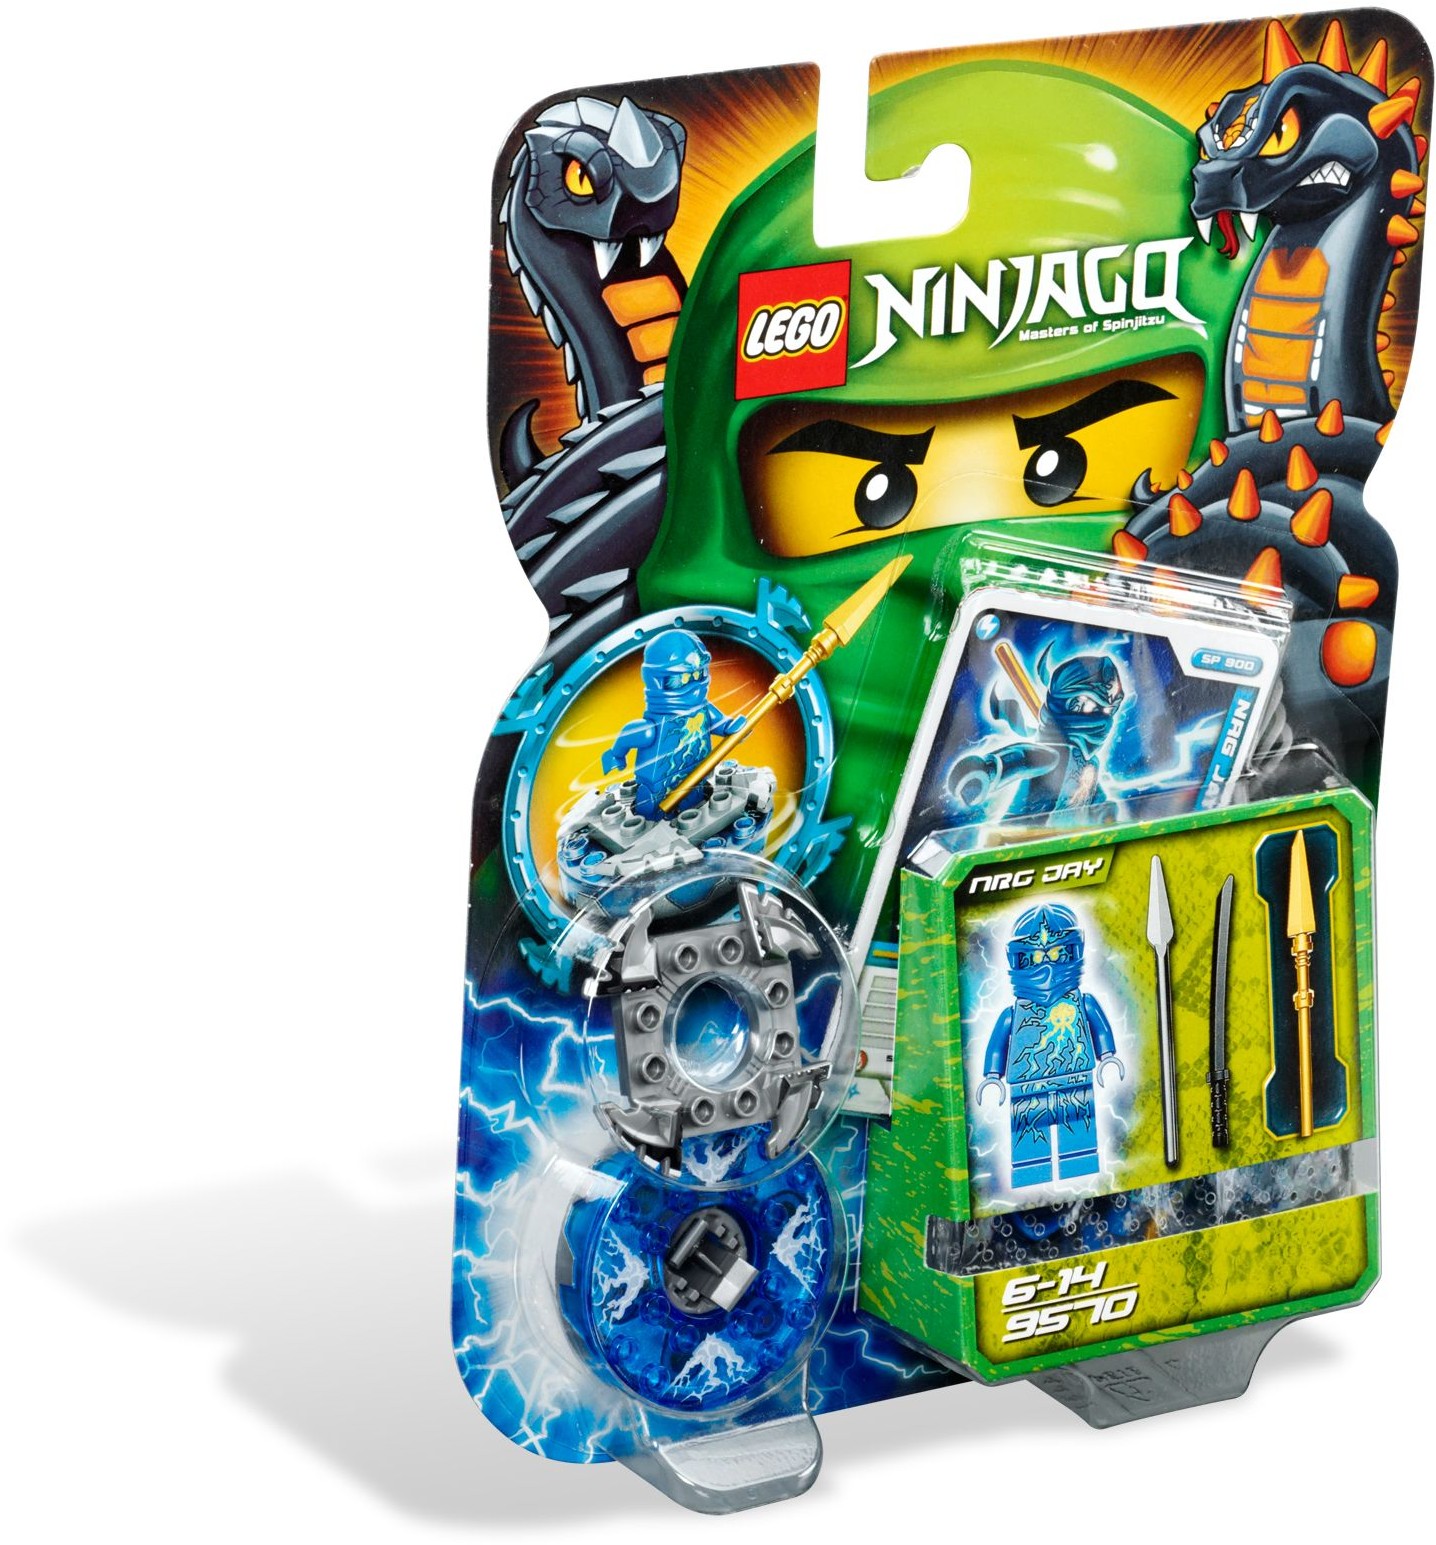 LEGO Ninjago 9570 NRG Jay **Brand New & Sealed** 